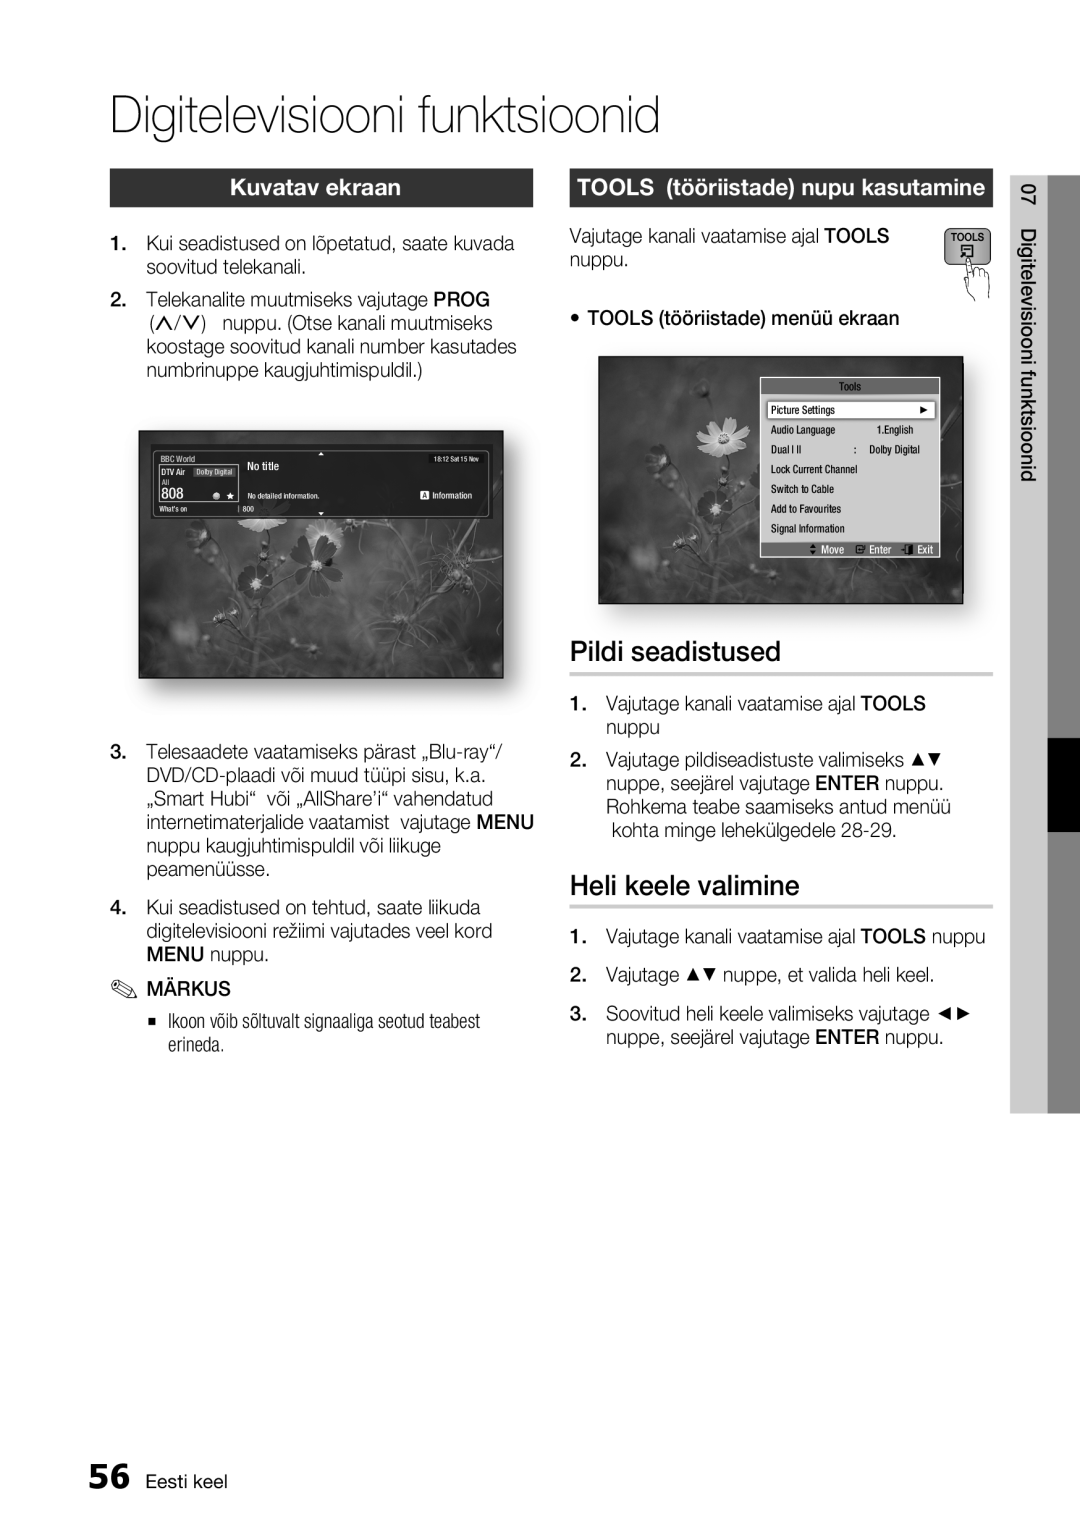 Samsung BD-E6300/EN manual Digitelevisiooni funktsioonid, Pildi seadistused, Kuvatav ekraan, Heli keele valimine 